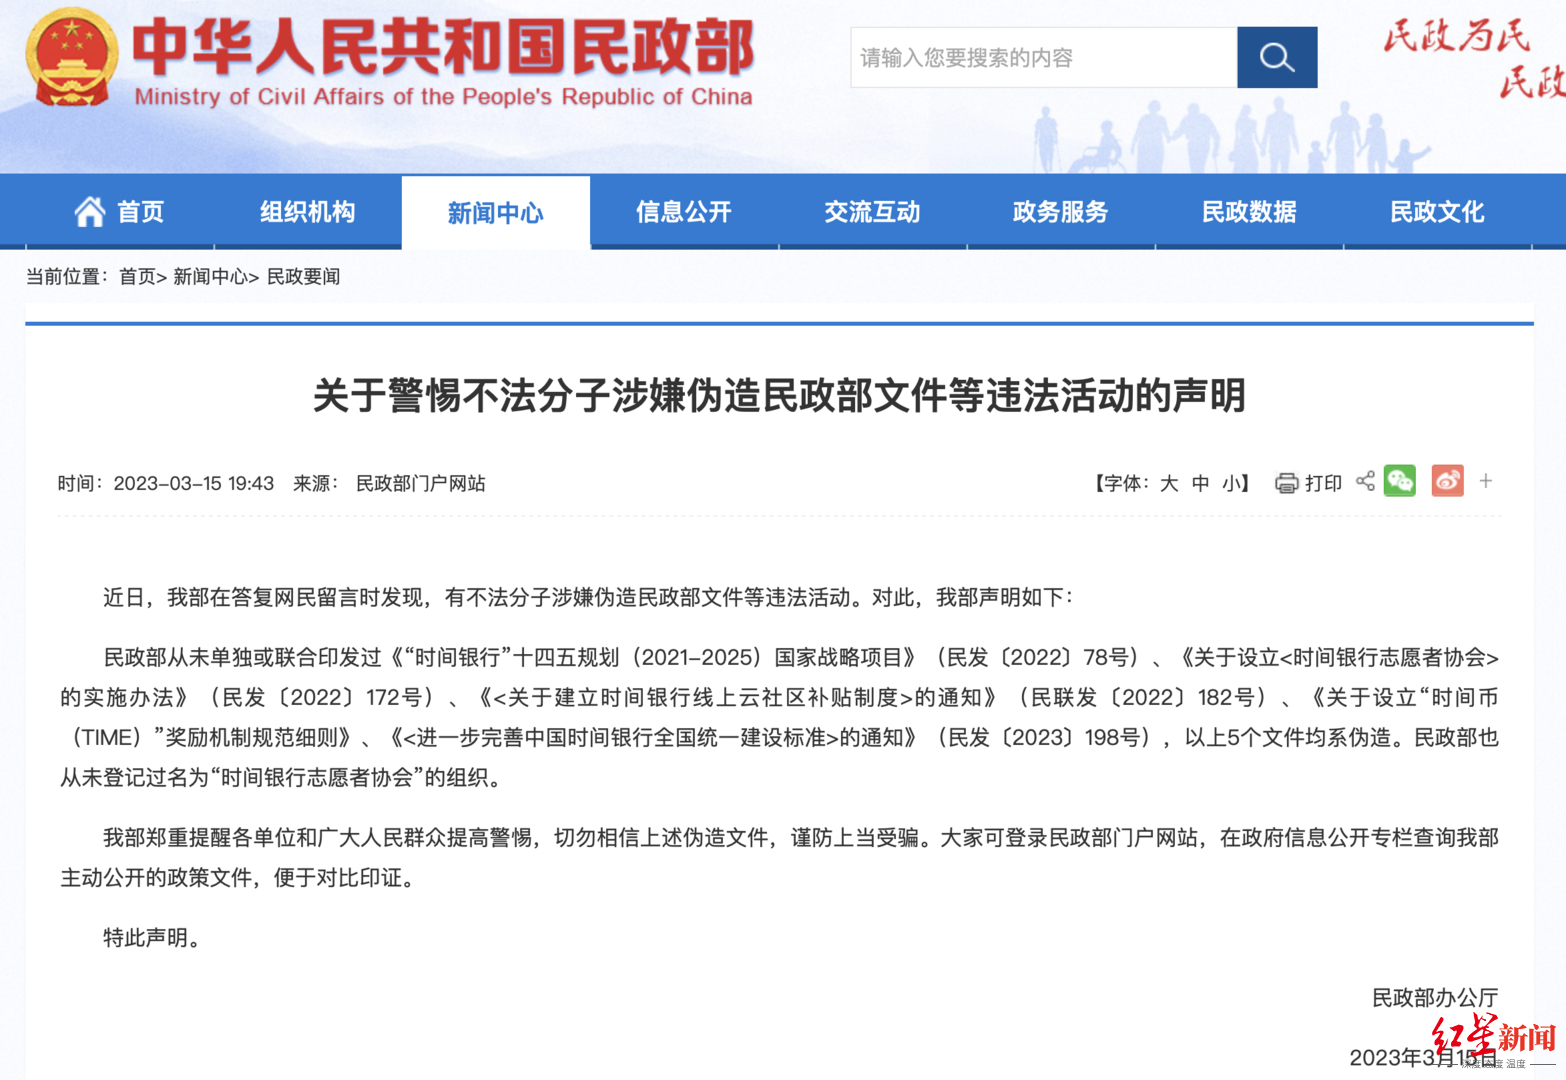 ↑3月15日，民政部官网发布《关于警惕不法分子涉嫌伪造民政部文件等违法活动的声明》